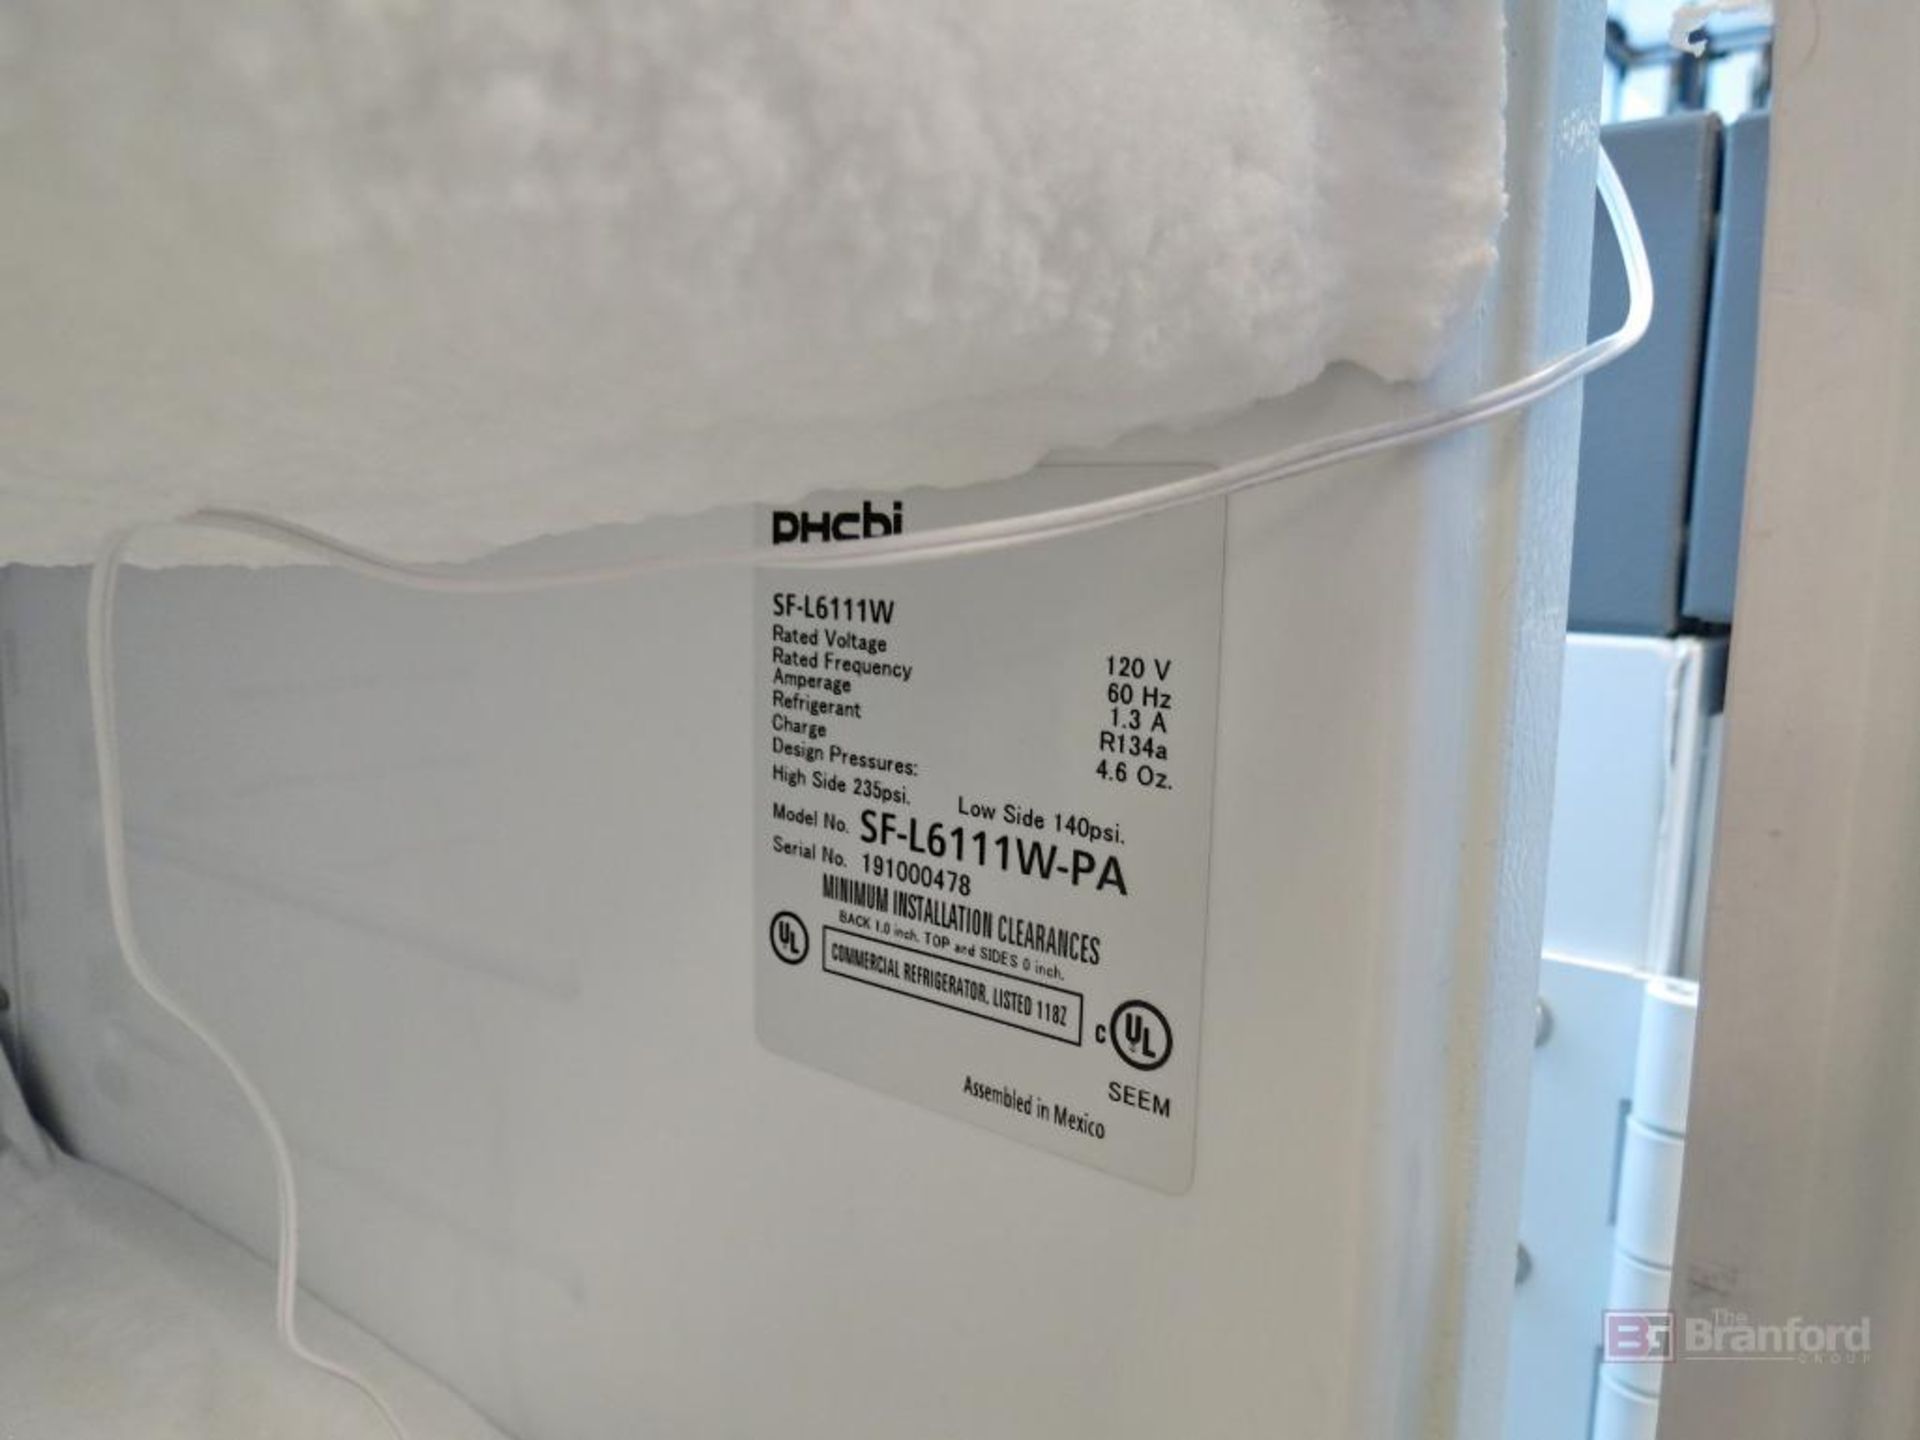 PHCbi SF-L6111W-PA Freezer - Image 4 of 5